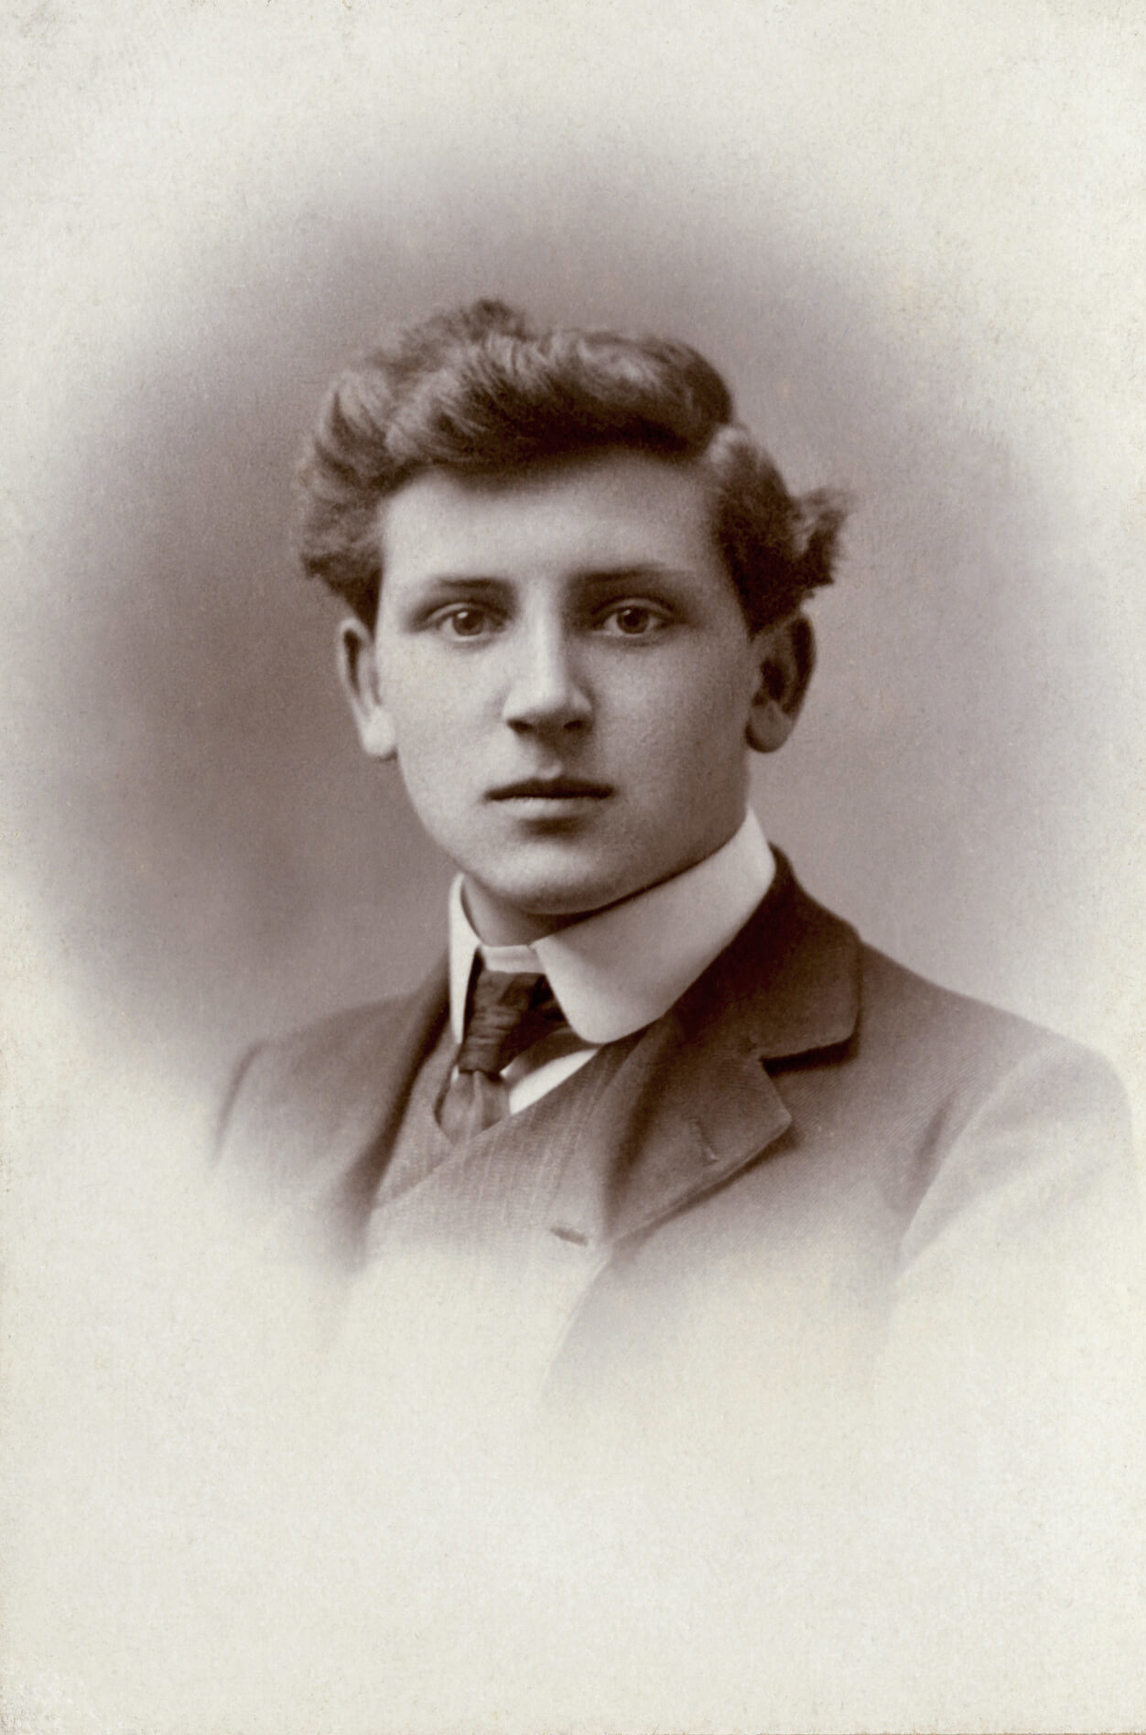  Photographie de Bertram Brooker prise en Angleterre juste avant le départ de sa famille vers le Canada en 1905